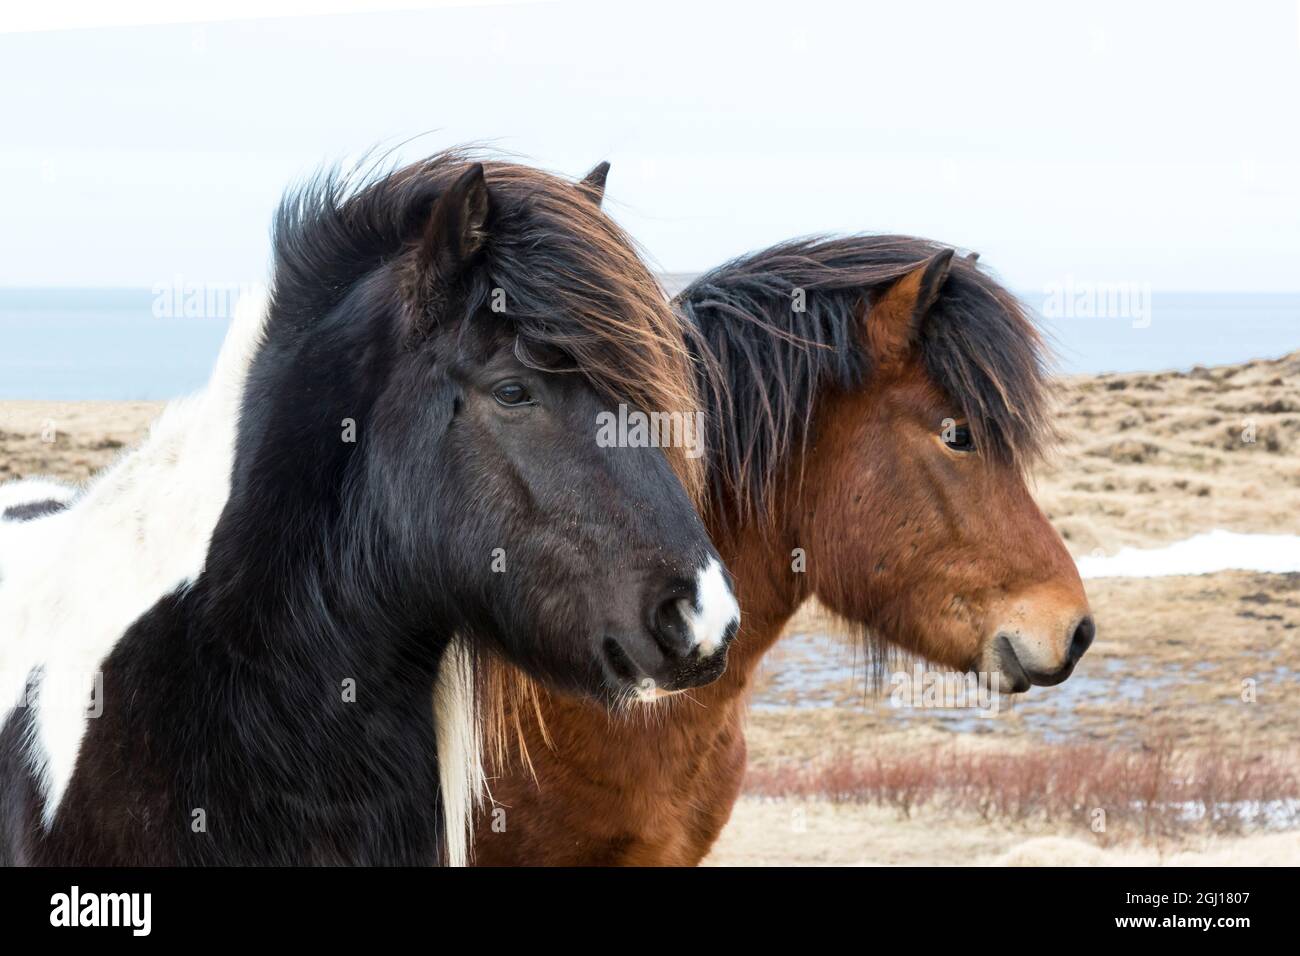 Europa, Island, Nordisland, in der Nähe von Akureyri. Isländische Pferde haben dicke Mähne und Mäntel, die sie vor der Kälte schützen. Stockfoto